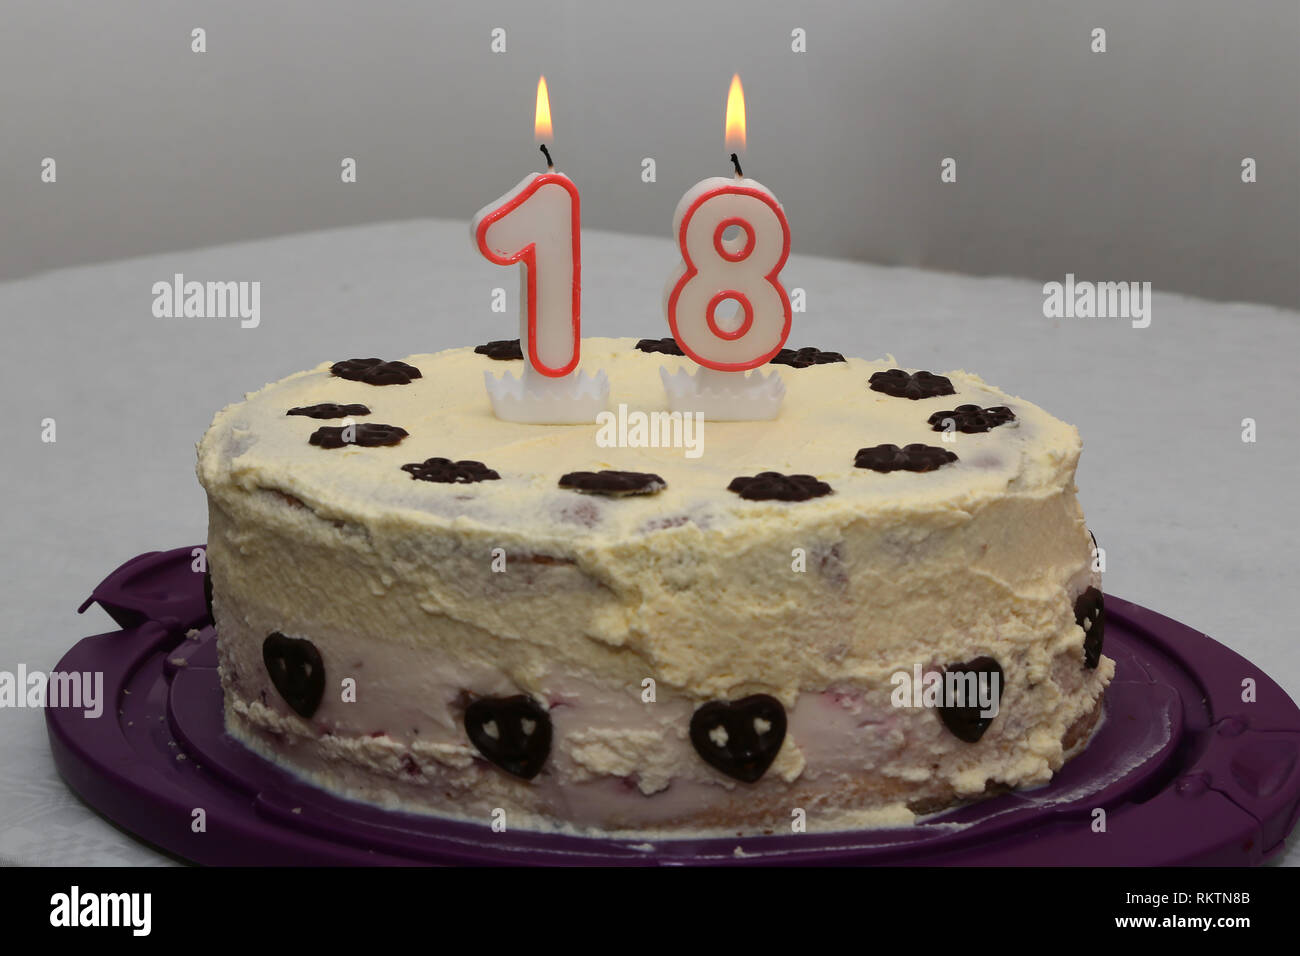 Vela de cumpleaños 18 años: Esta vela representa el número 18. Es